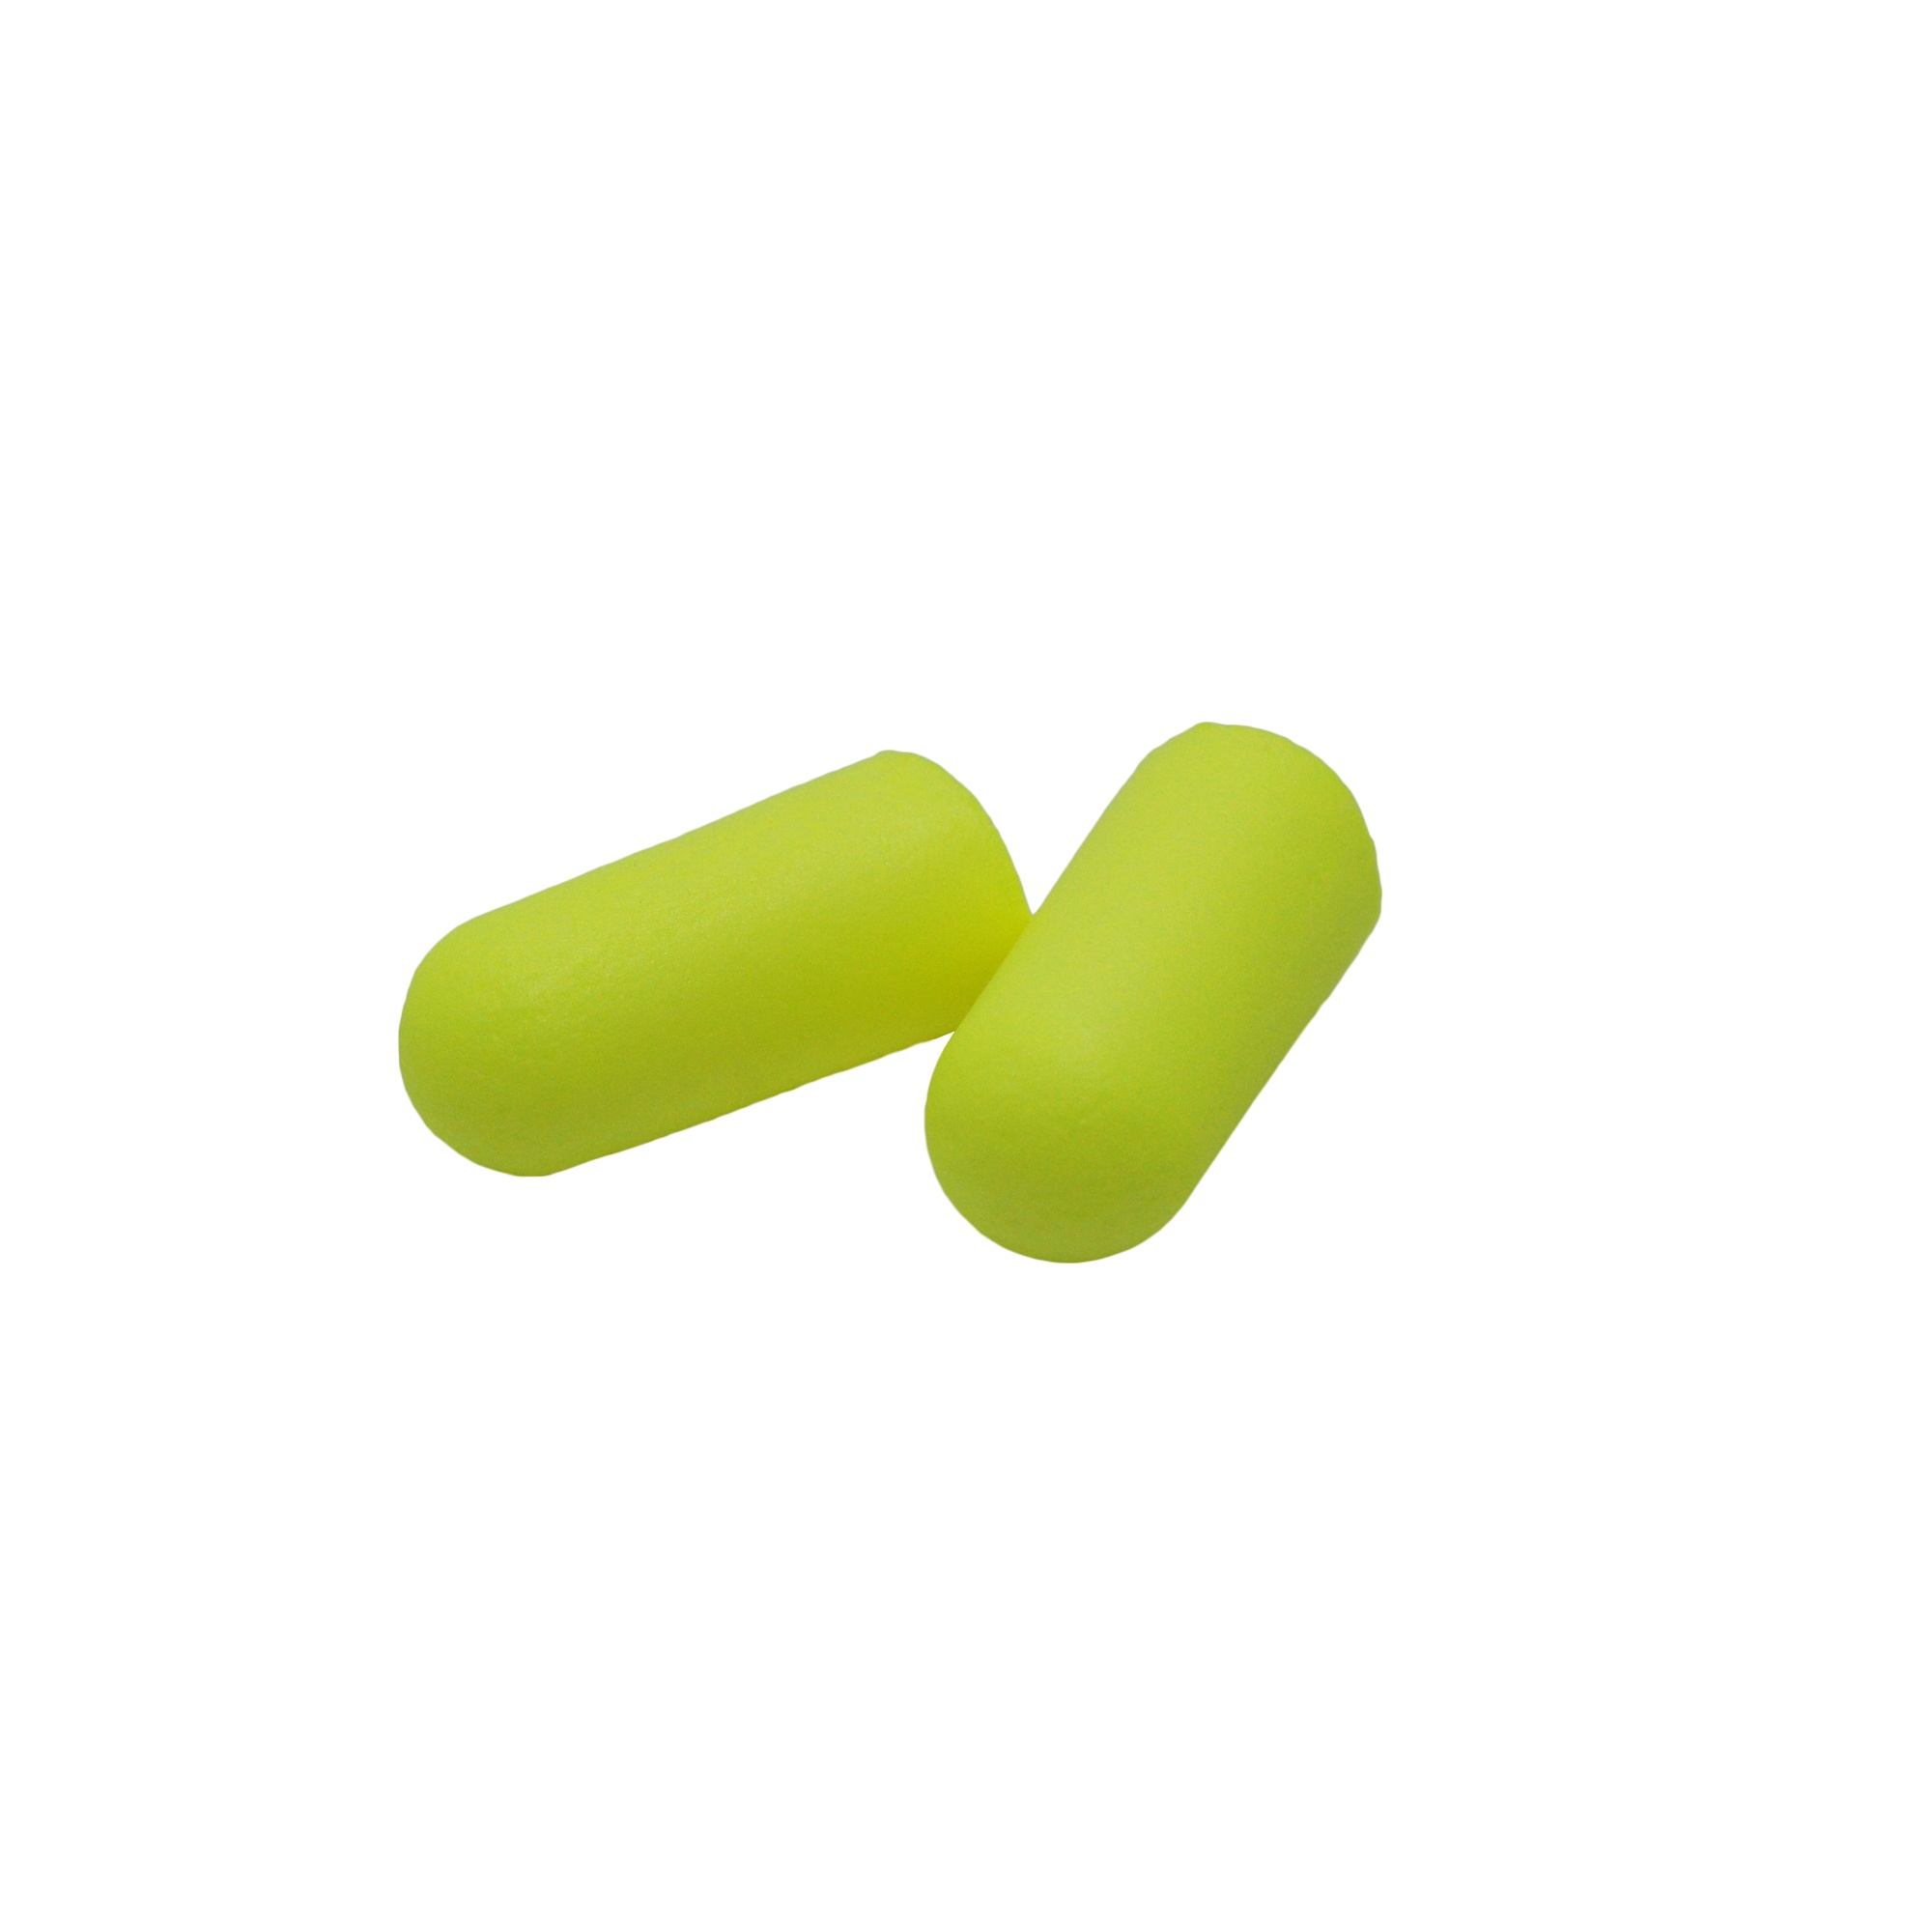 Ear plugs "EARSoft Yellow Neons" Image